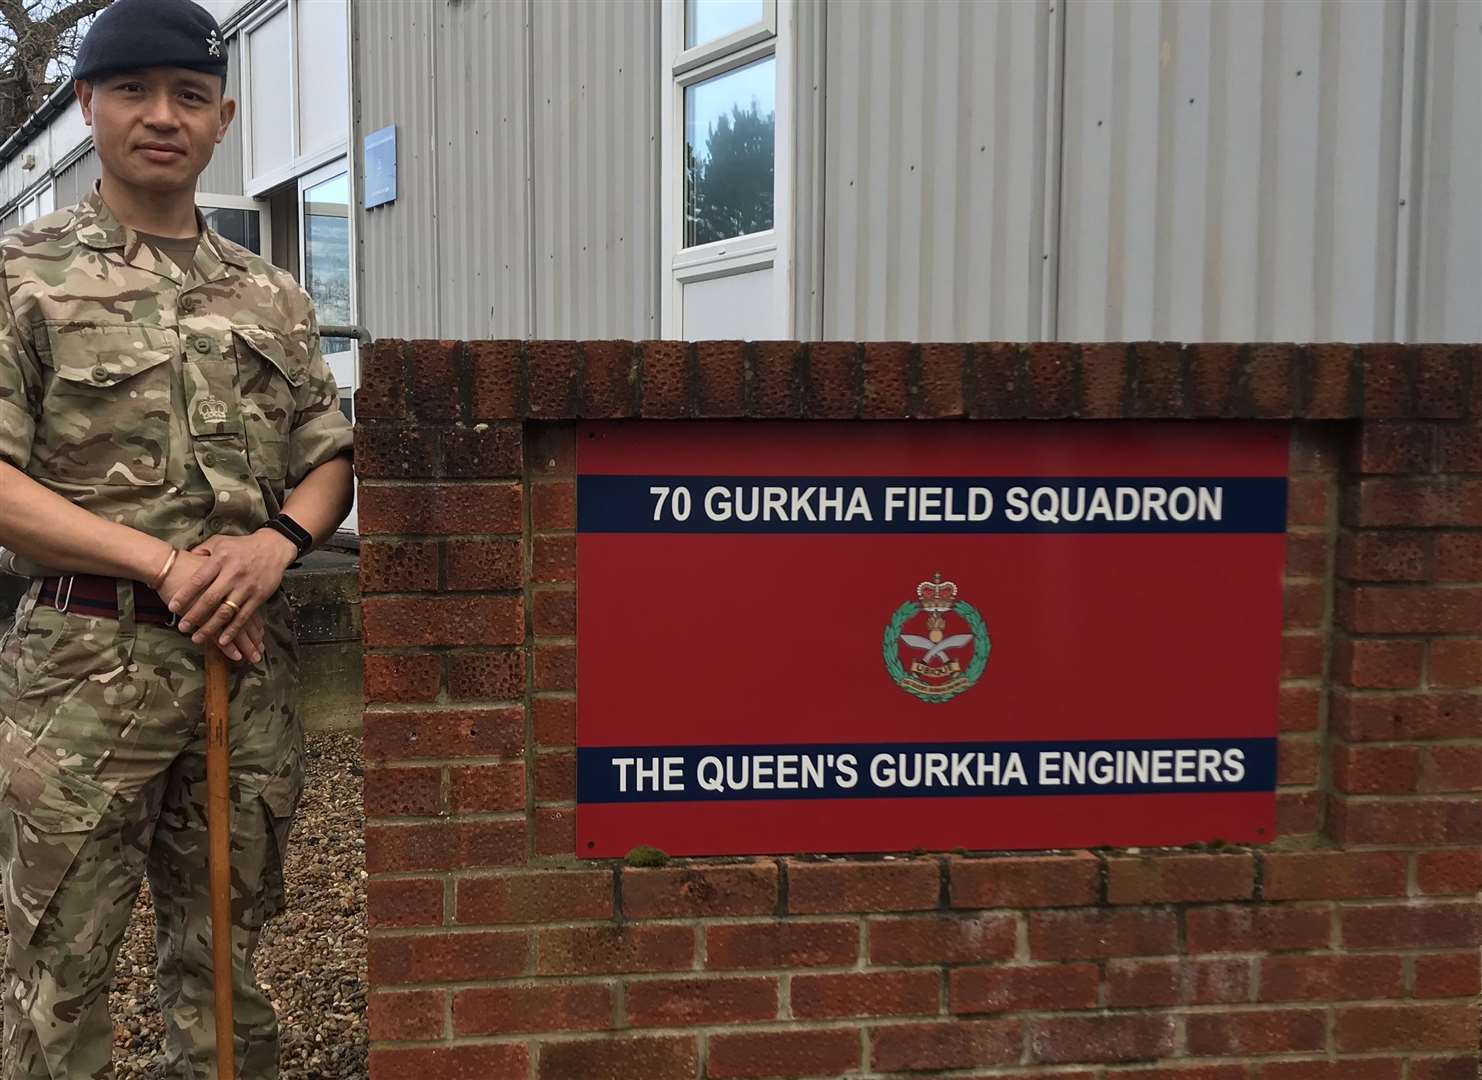 Squadron Sergeant Major Eka Rai is based at the Invicta Park Barracks, in Maidstone